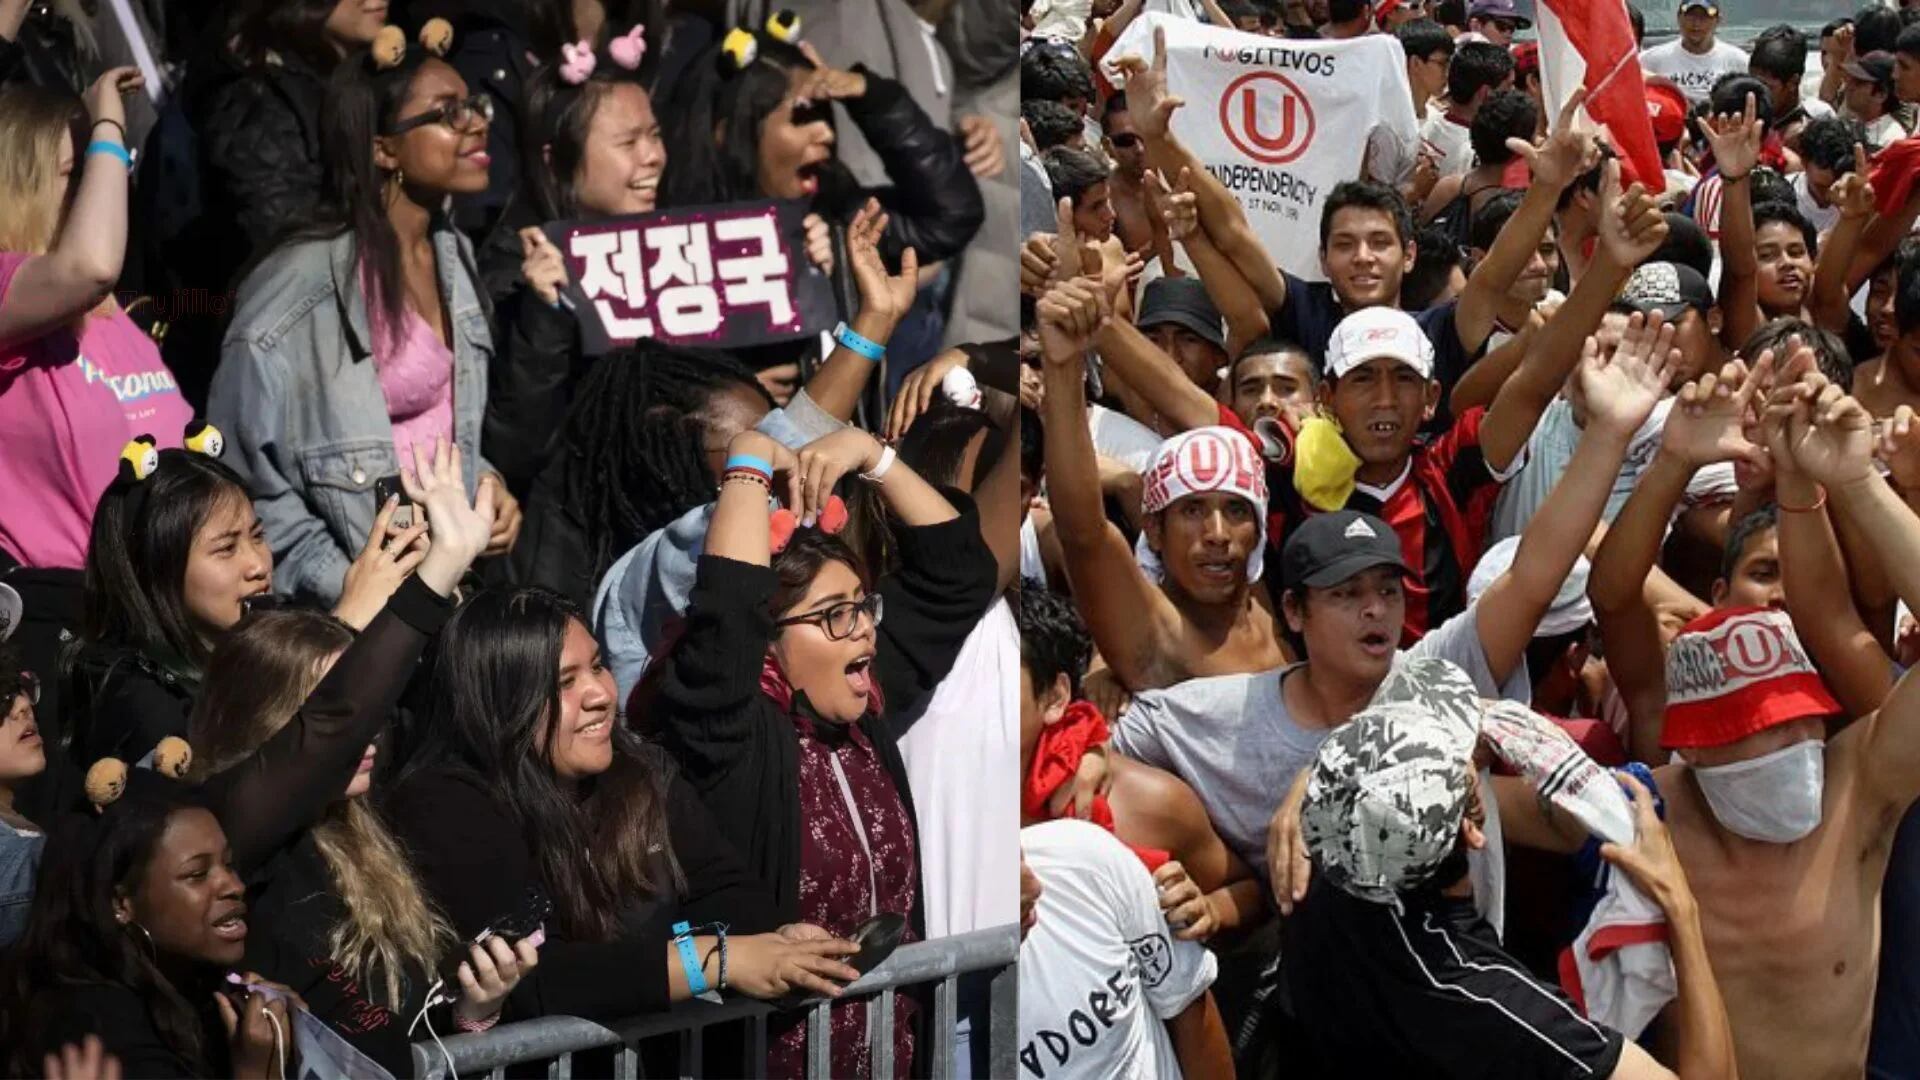 El fanatismo extremo en los fans del K-pop y los hinchas de equipos de fútbol: ¿Quiénes son propensos a caer en esto?